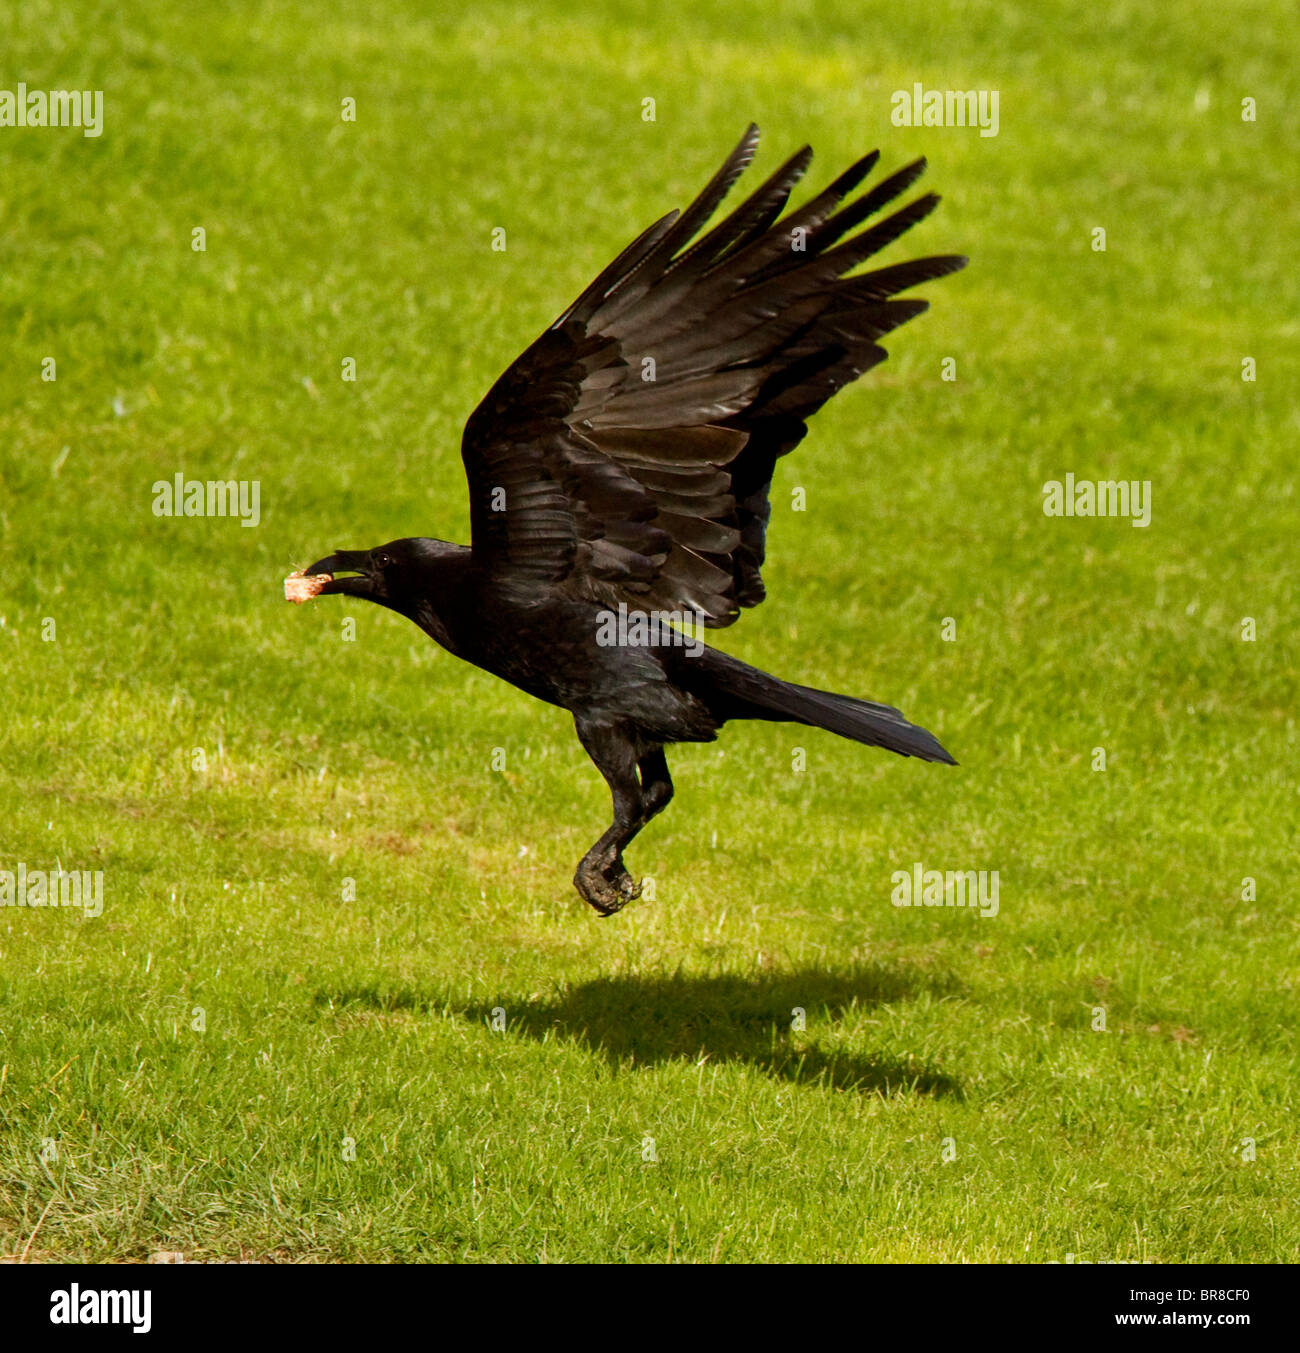 Corneille noire Corvus corone en vol à rhayader powys gigrin farm dans un endroit où vous verrez la faune gallois à son meilleur Banque D'Images